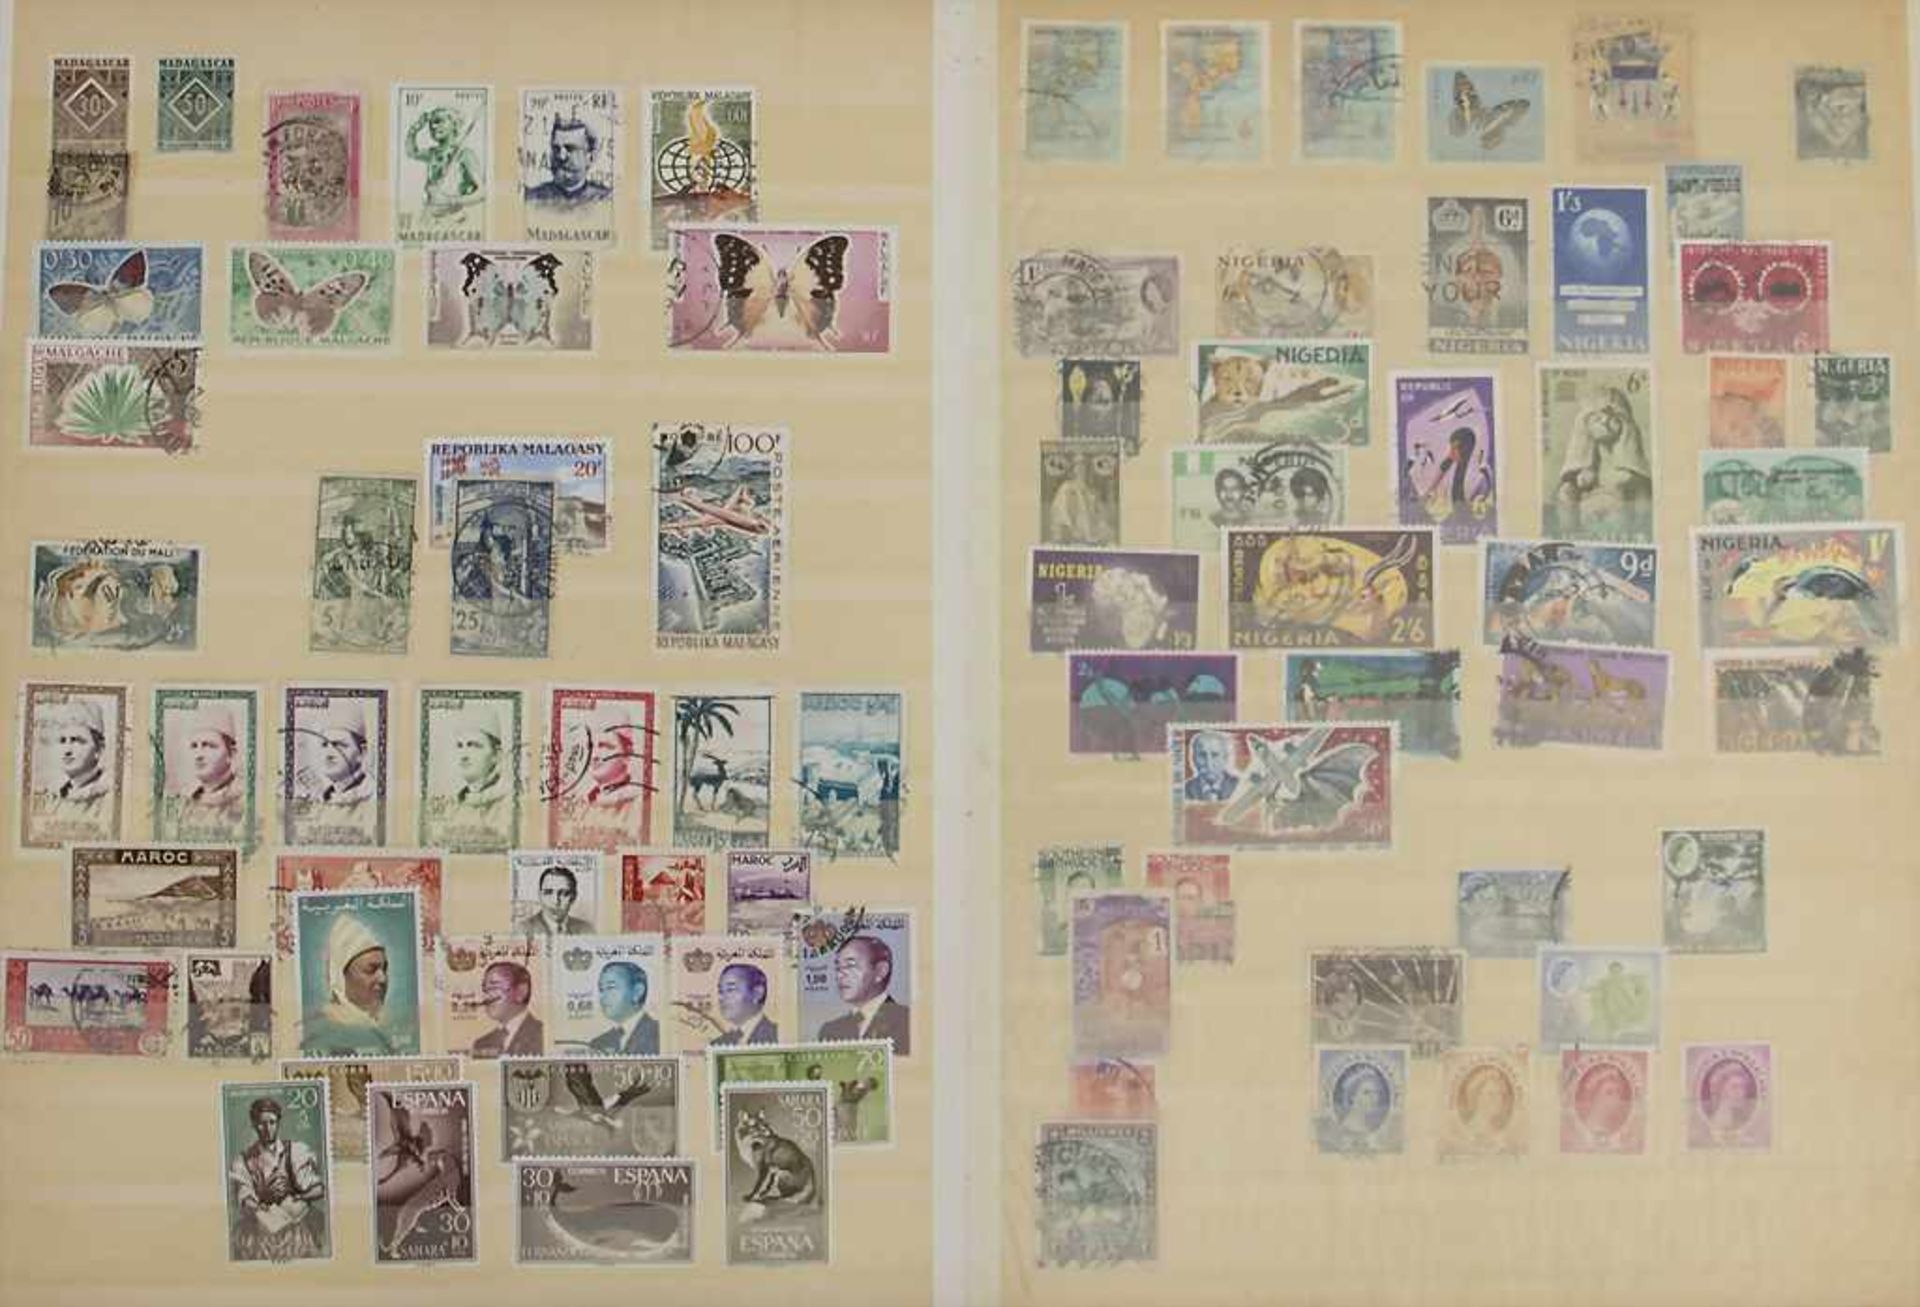 2 Briefmarkenalben / 2 stamp albums2 Alben Briefmarken mit Marken aus aller Welt, Albe